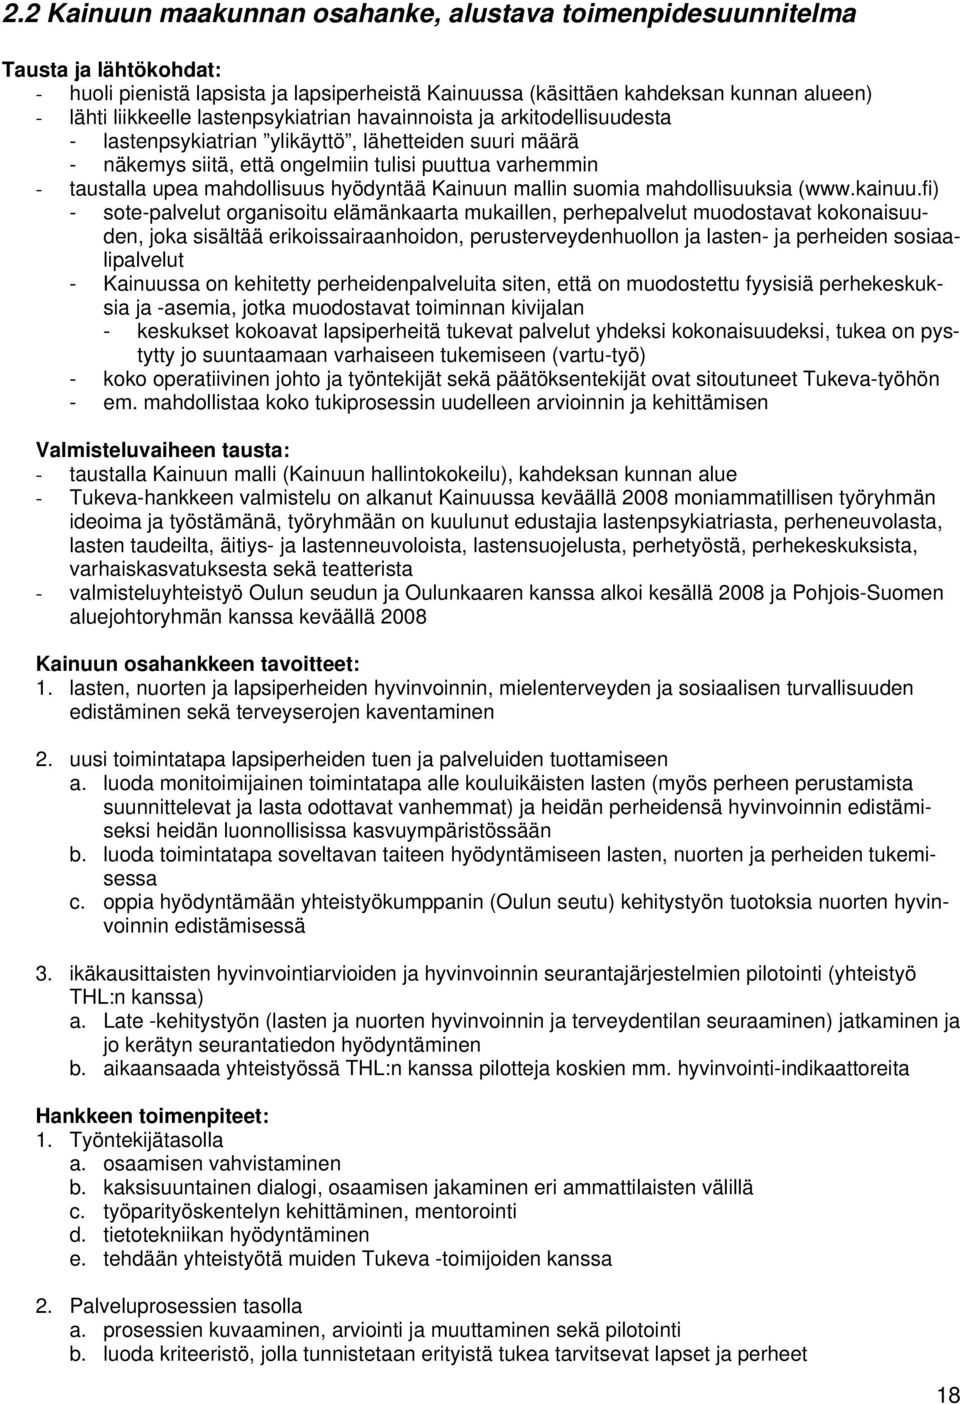 hyödyntää Kainuun mallin suomia mahdollisuuksia (www.kainuu.